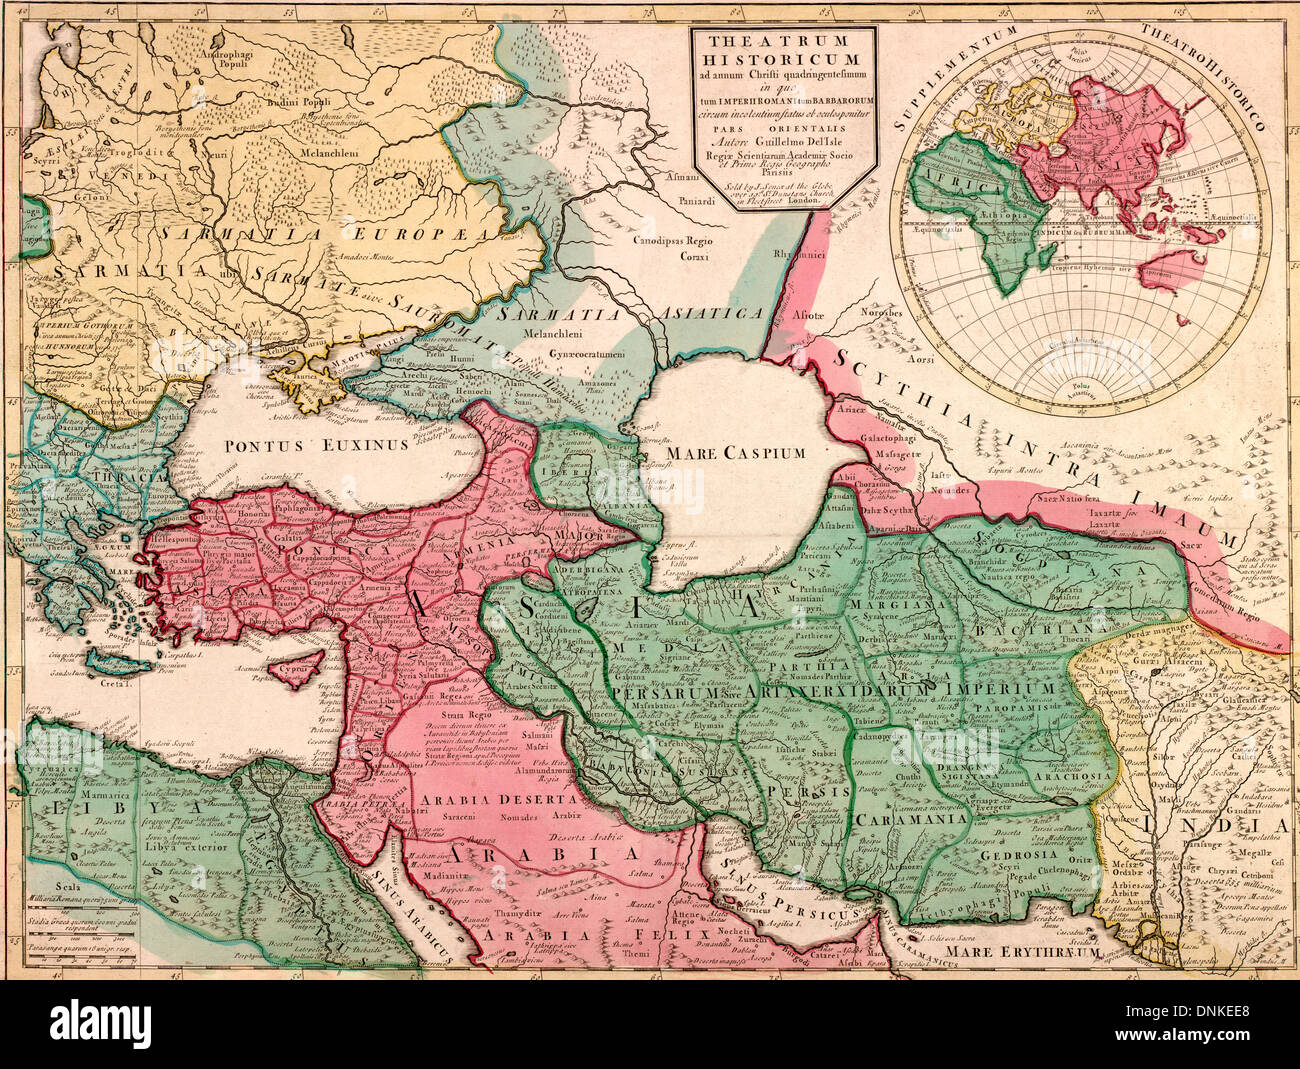 Europa/Asia Mappa, circa 1900 teatro di quattrocento anni di storia in cui l'Impero Romano e le invasioni di abitanti intorno alla parte orientale dello stato Foto Stock